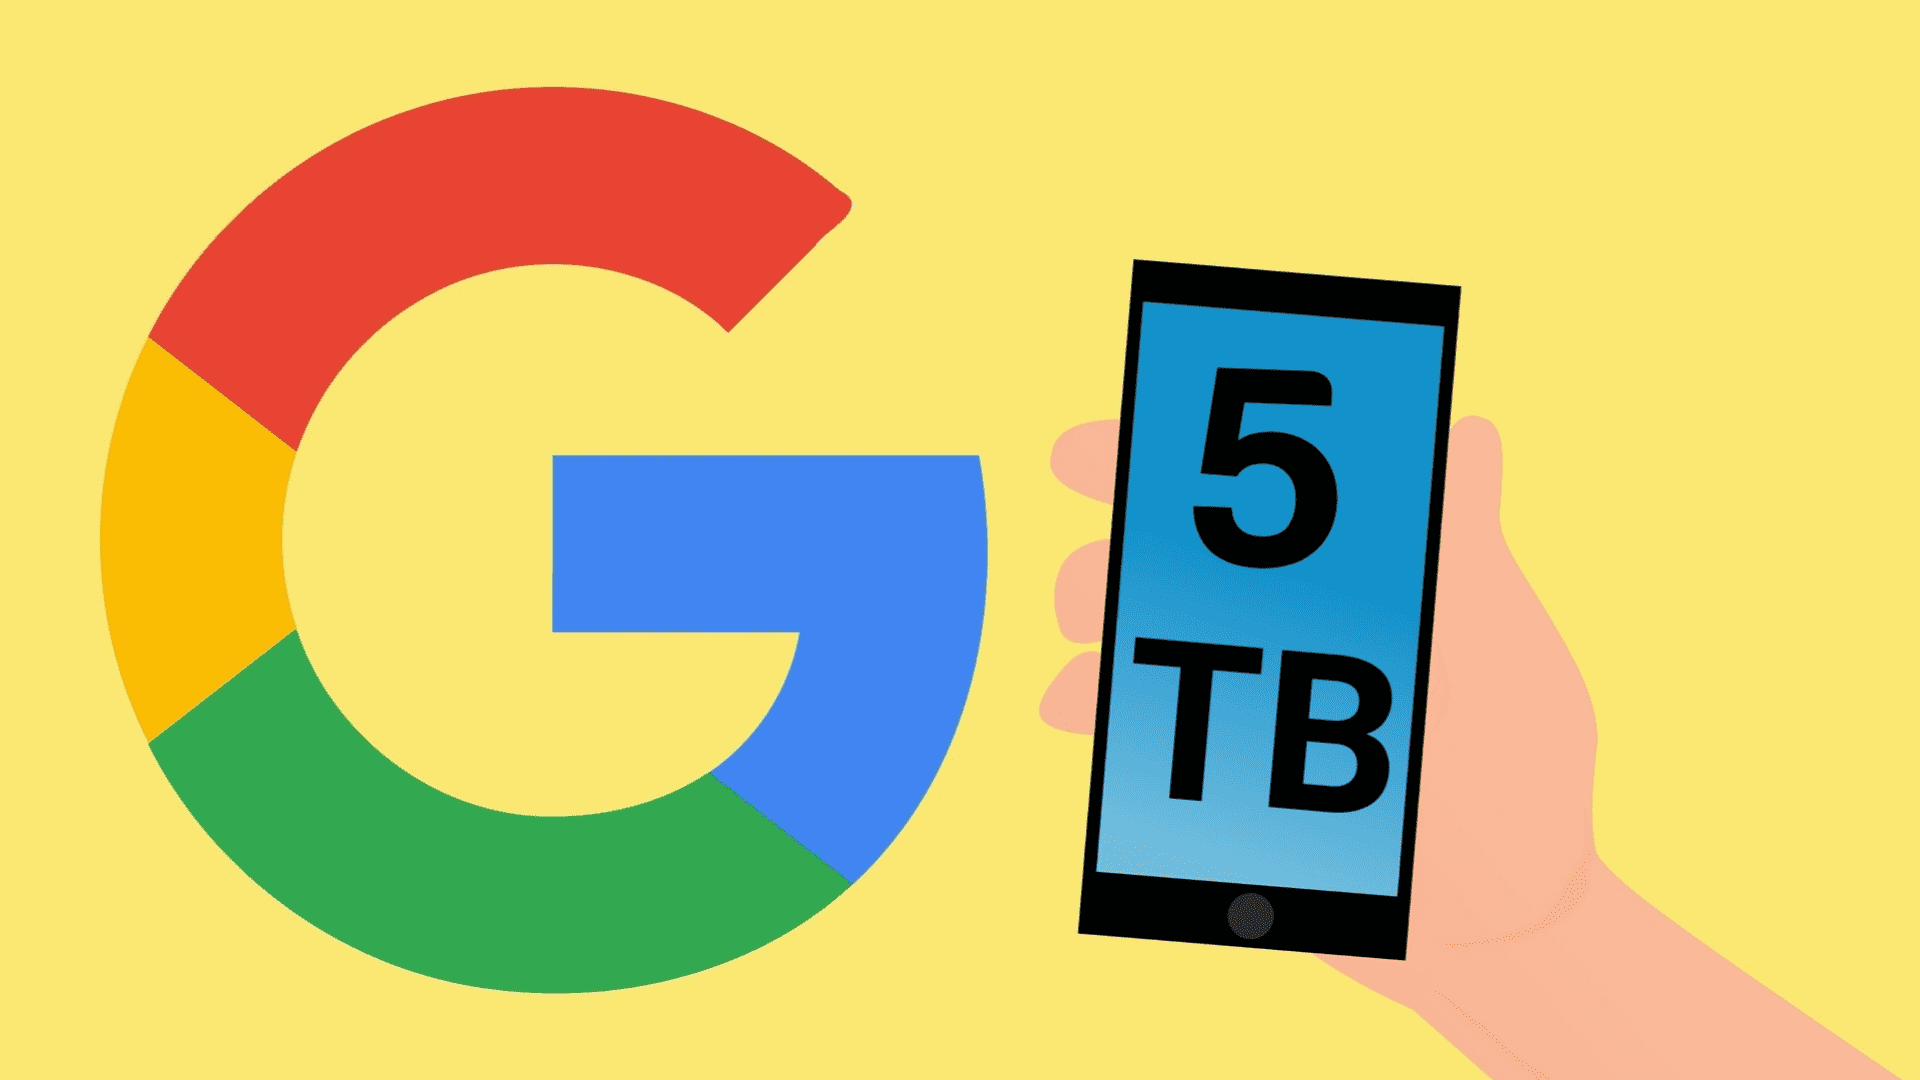 خدمة Google One السحابية 5 تيرابايت مساحة الخطة الوسطية